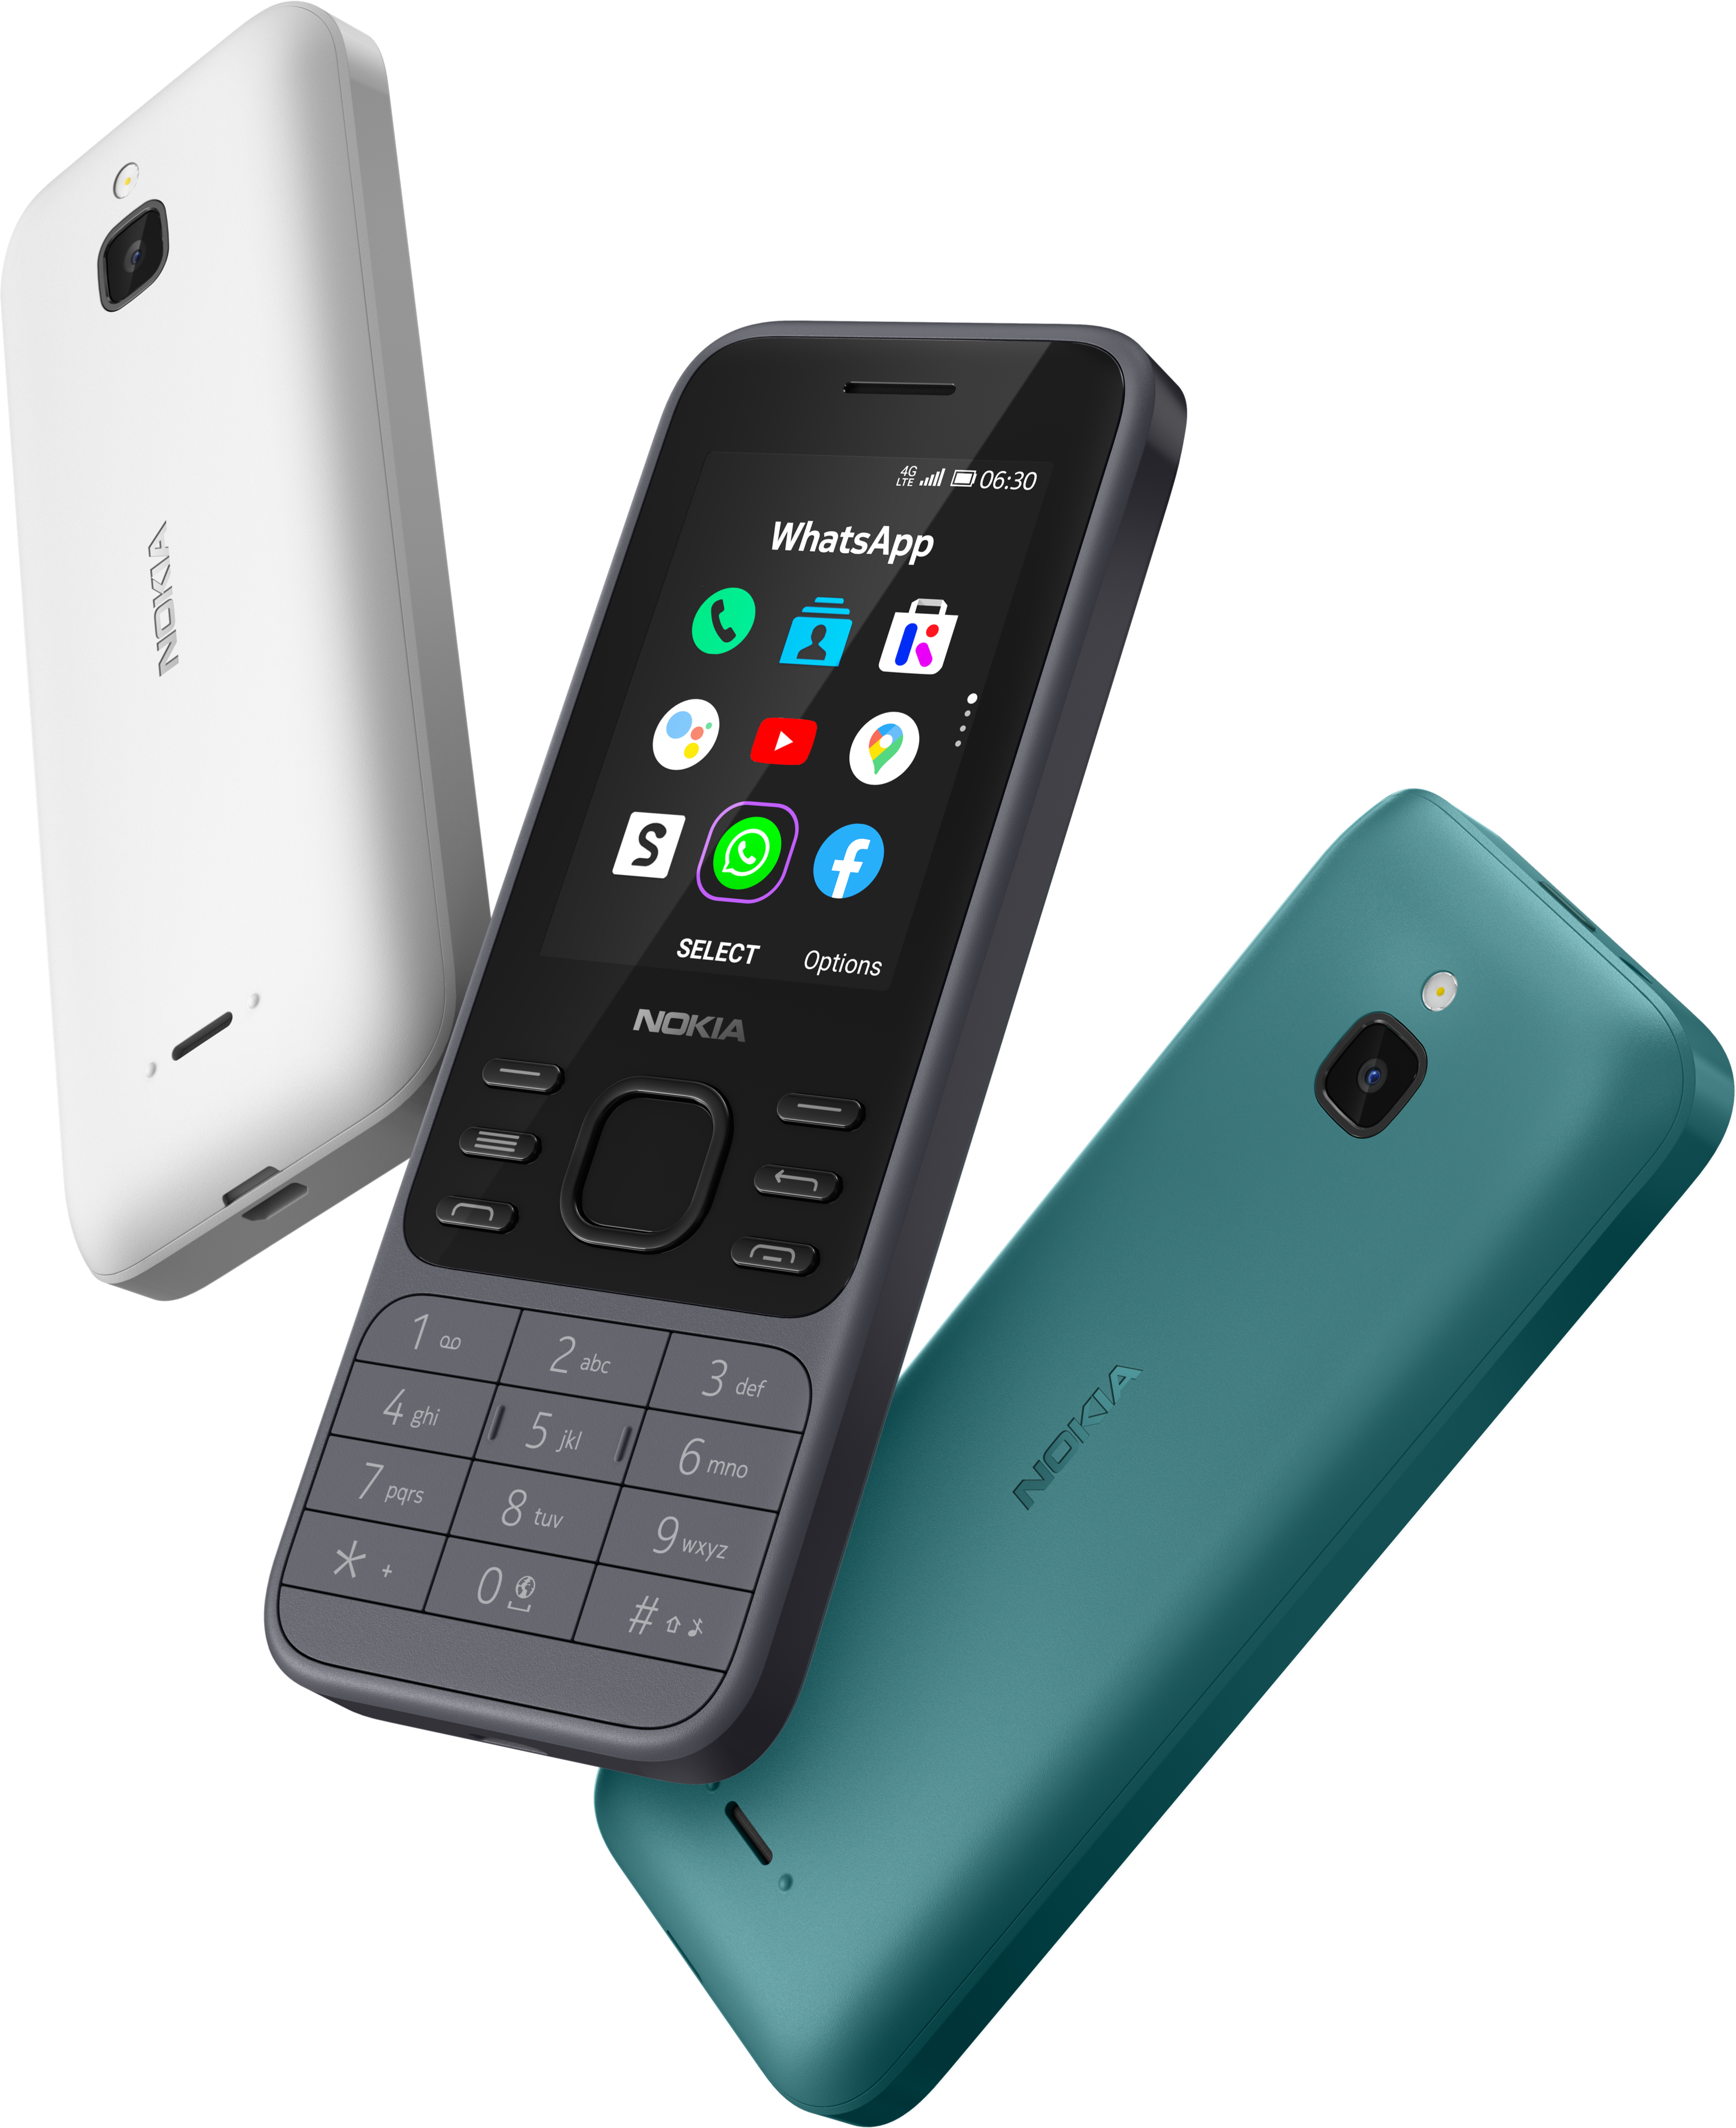  Nokia 6300 4G, Desbloqueado, Dual SIM, Hotspot WiFi, Aplicaciones sociales, Google Maps y Asistente